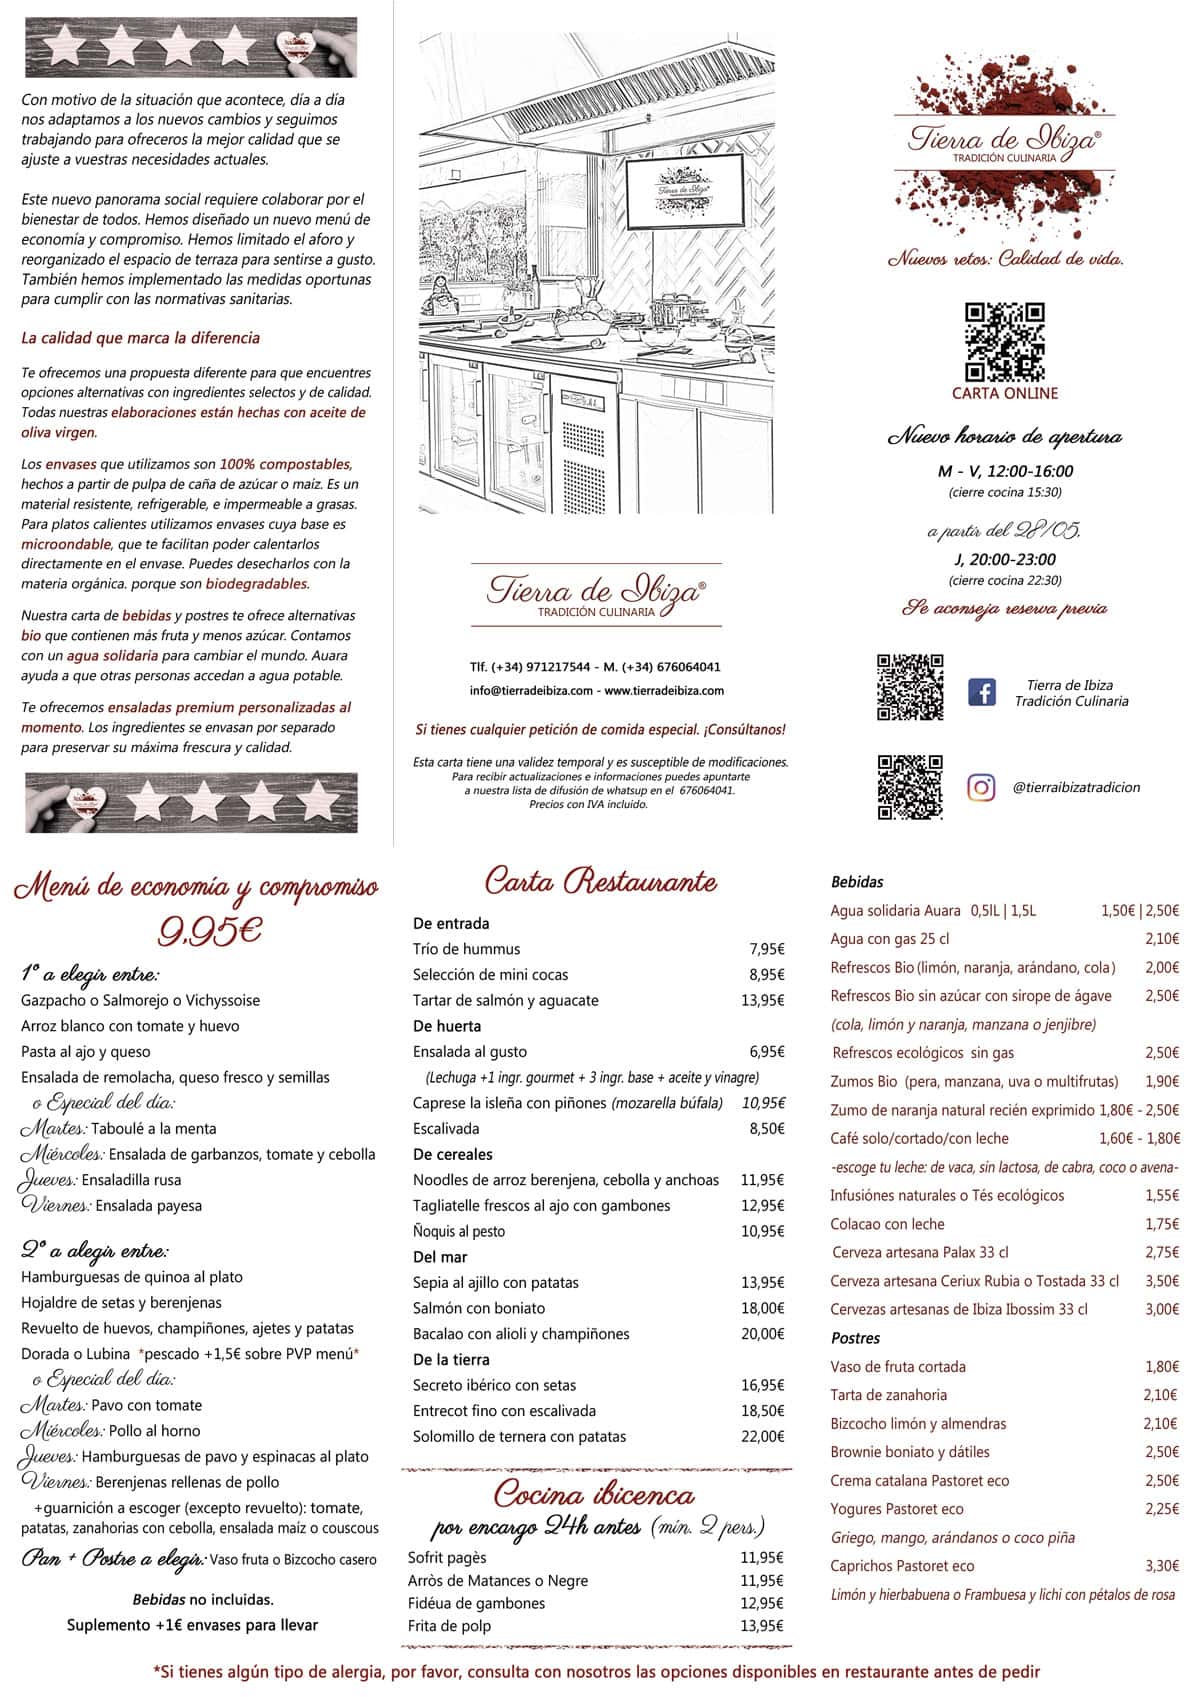 Carta-Terra-de-Eivissa-tradició culinària 2020